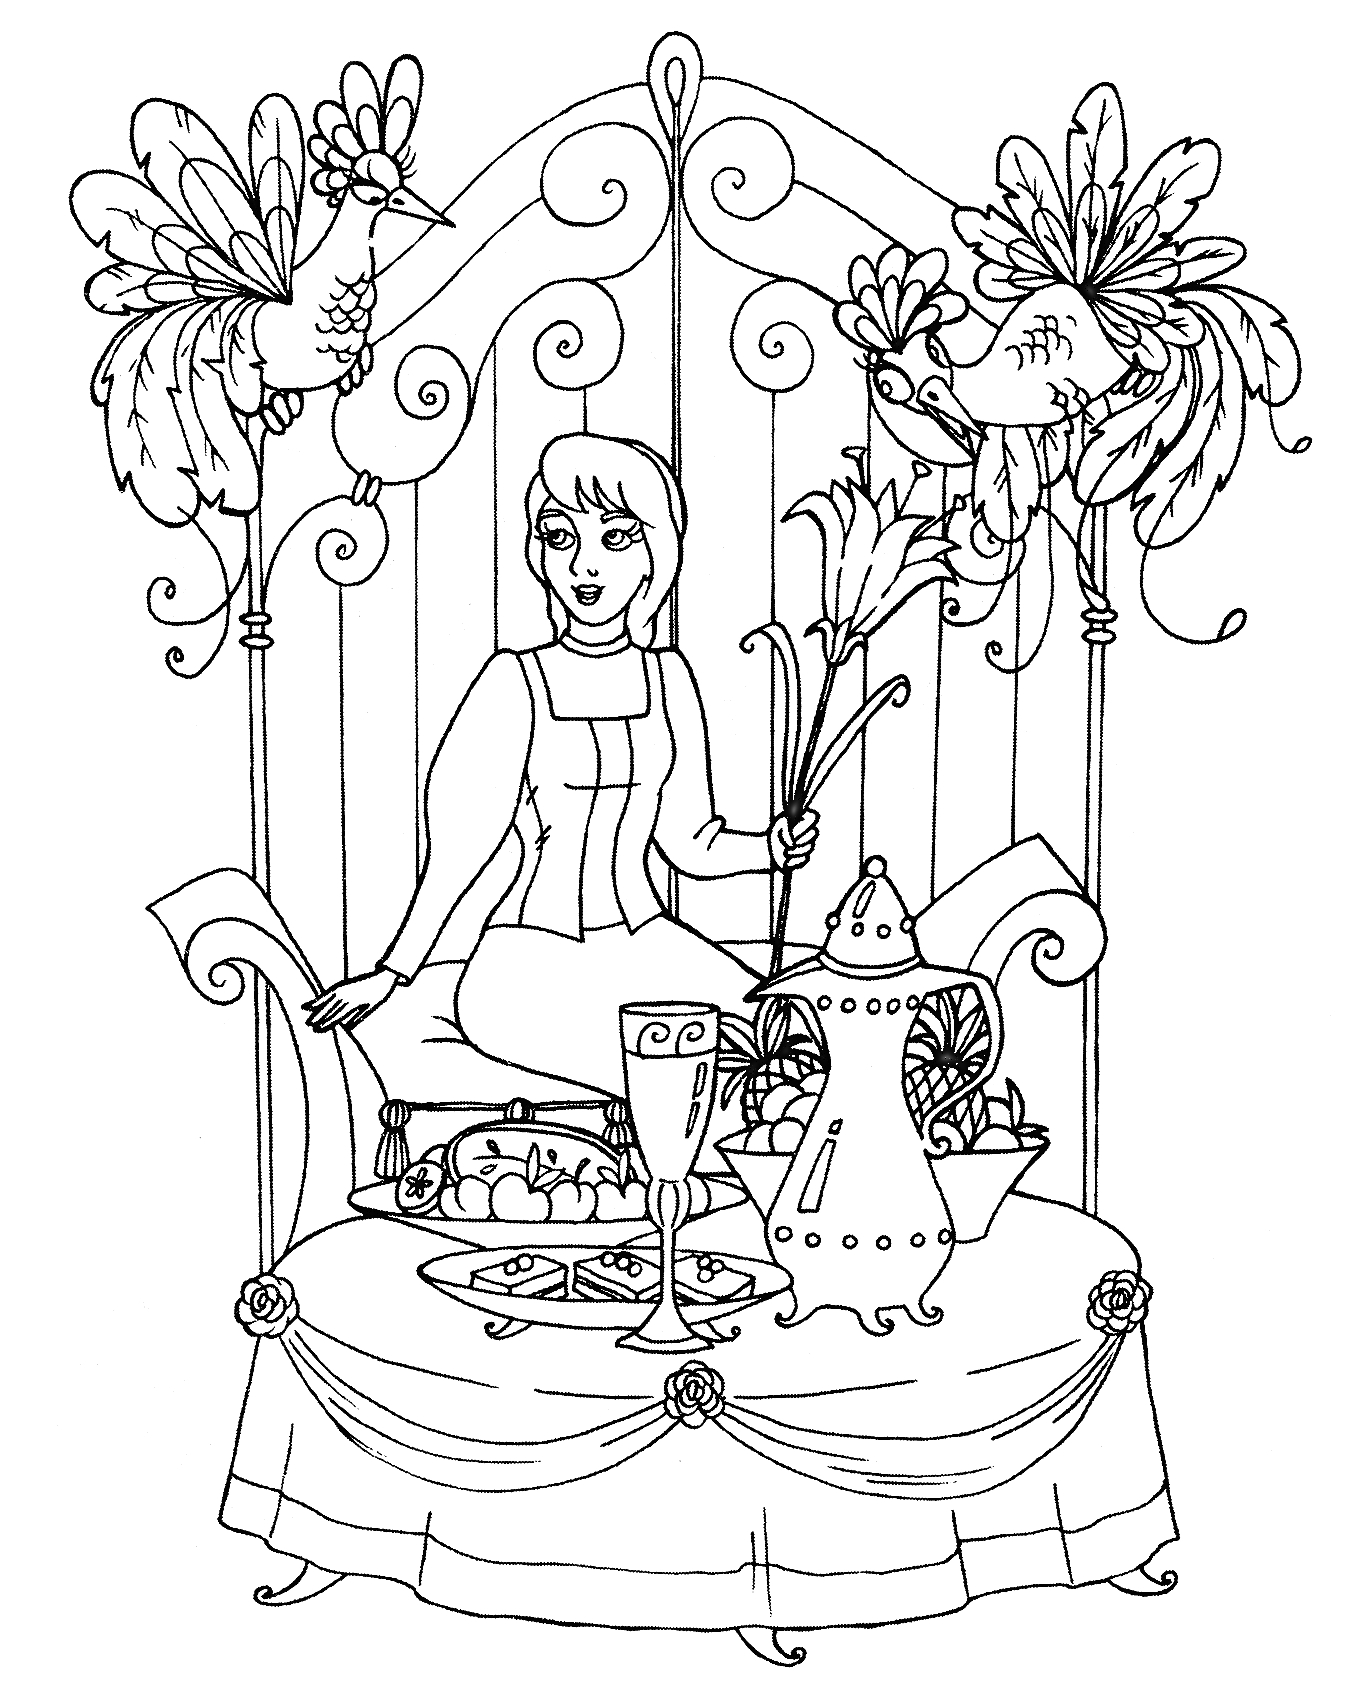 Раскраска Девушка с цветком у стола, сервированного посудой и едой, сидящая перед декоративной решеткой с птицами сверху